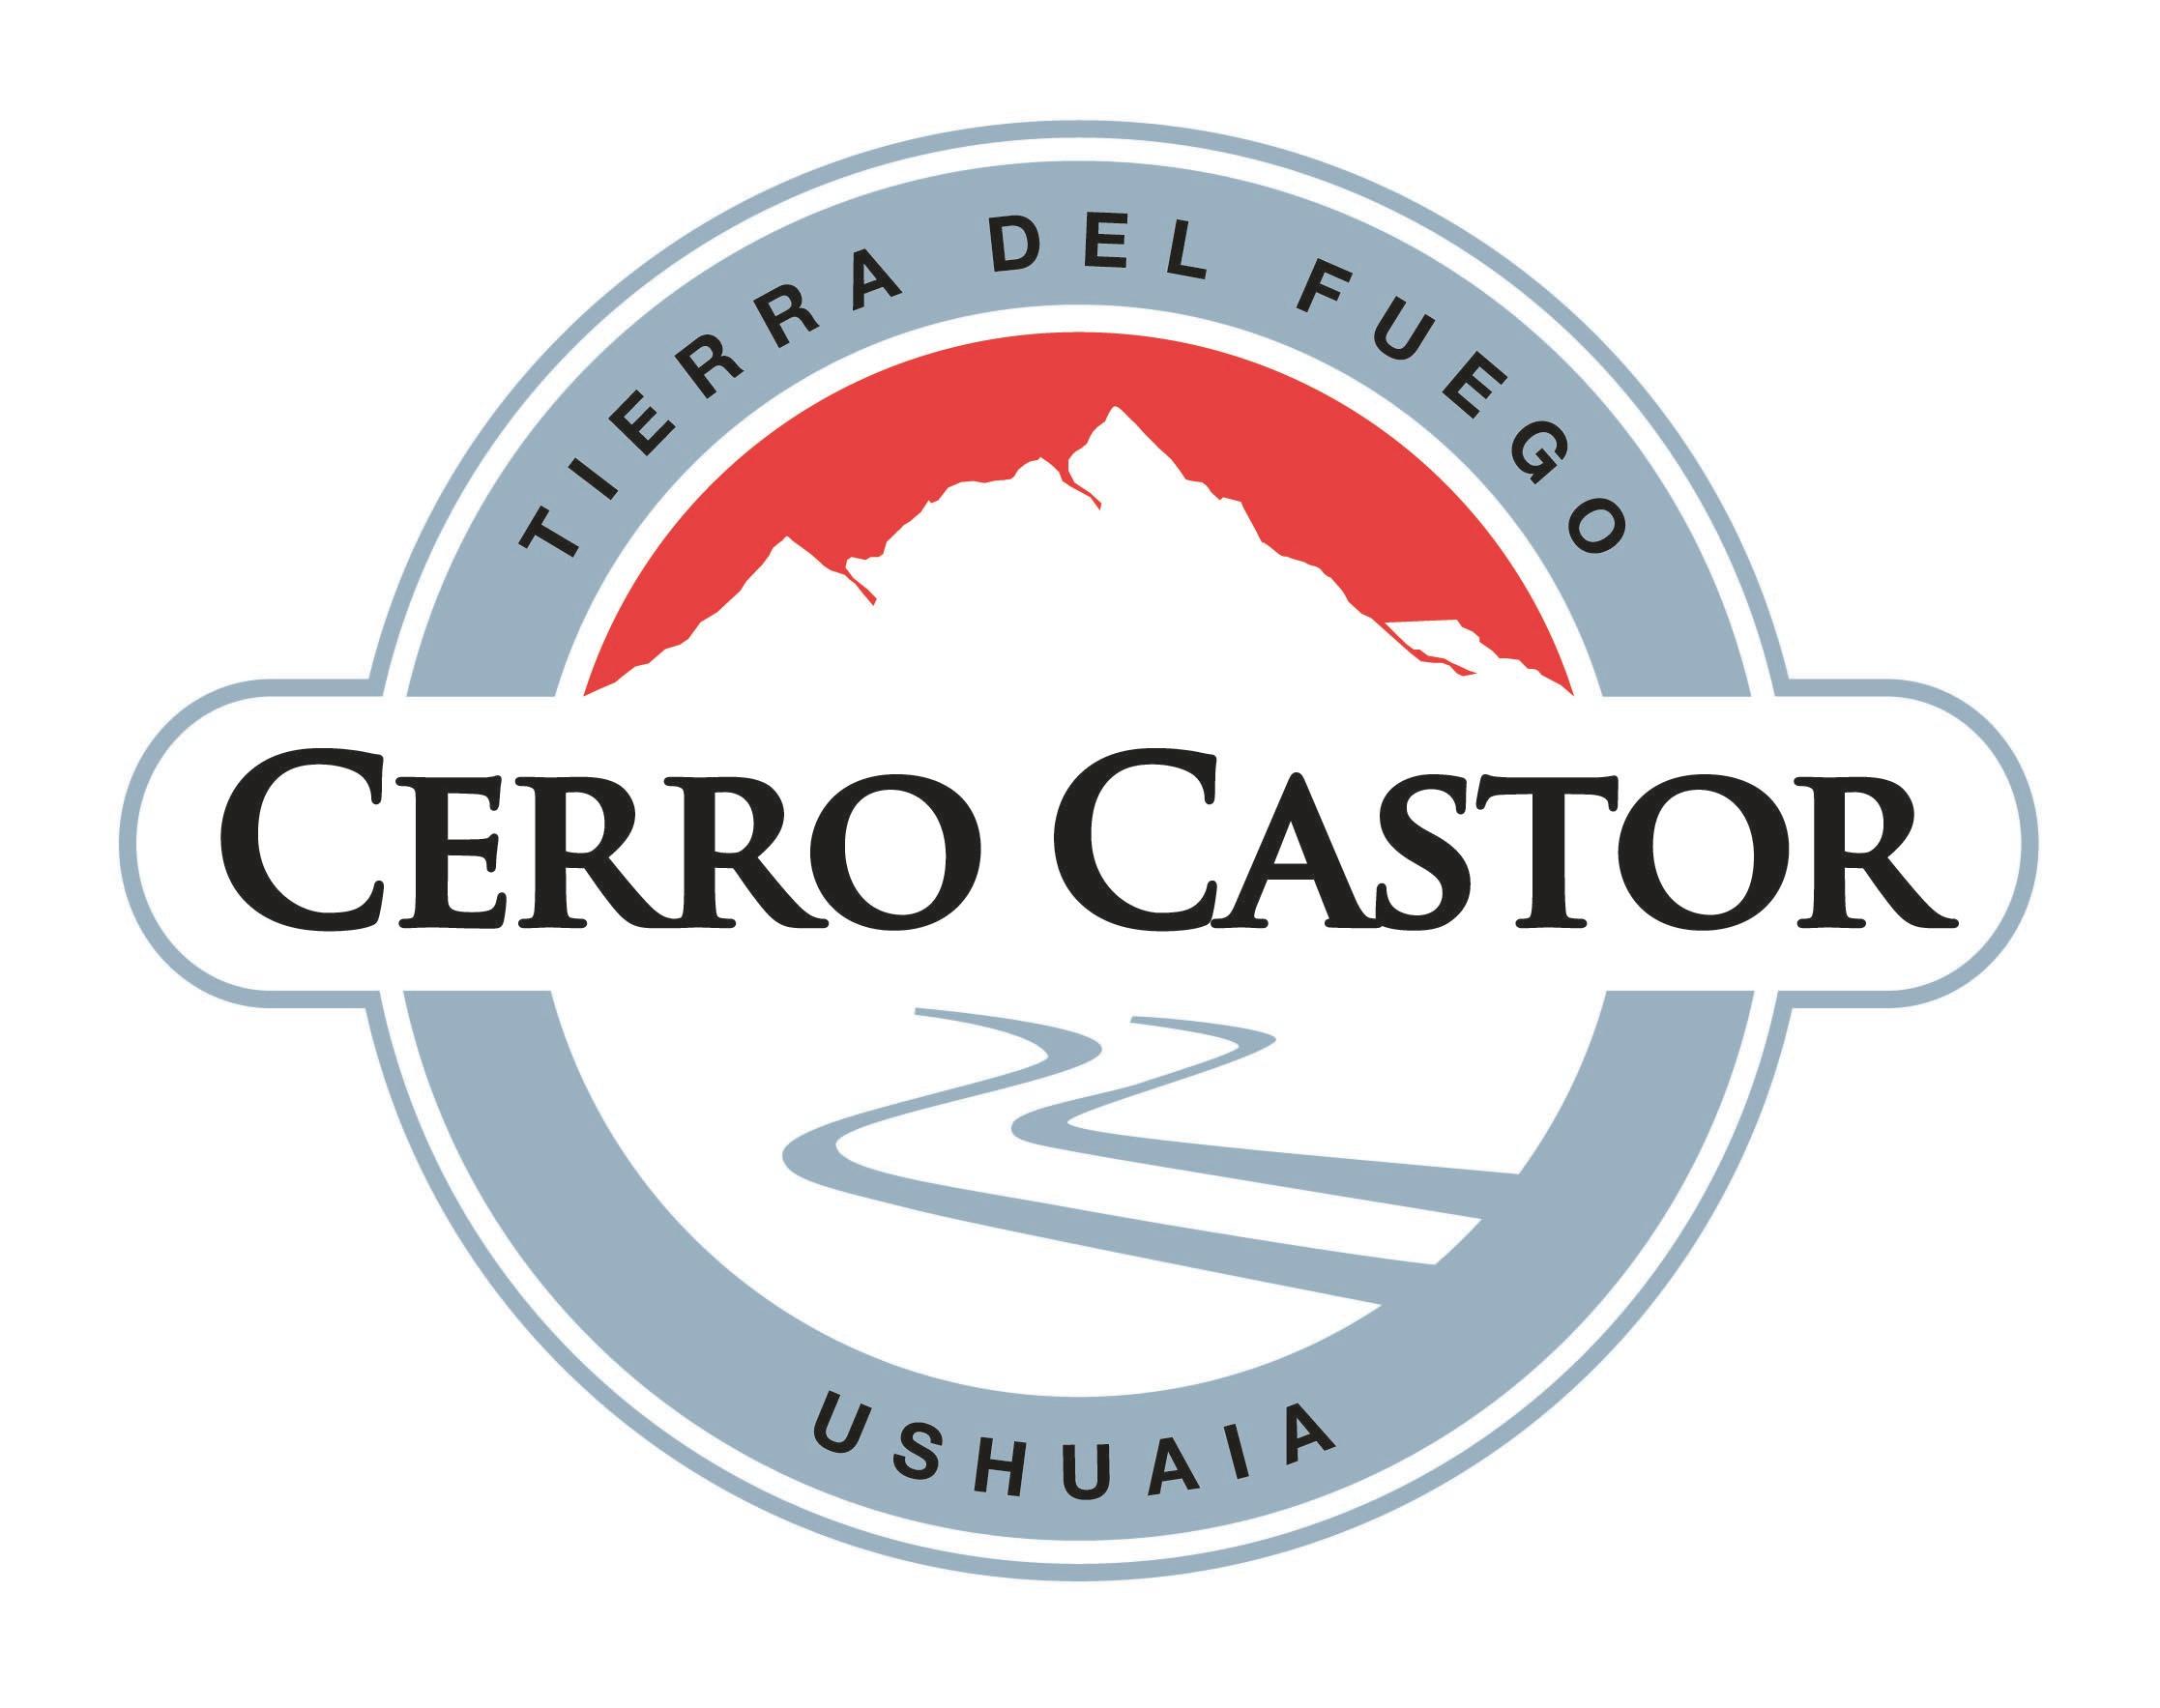 Cerro Castor logo